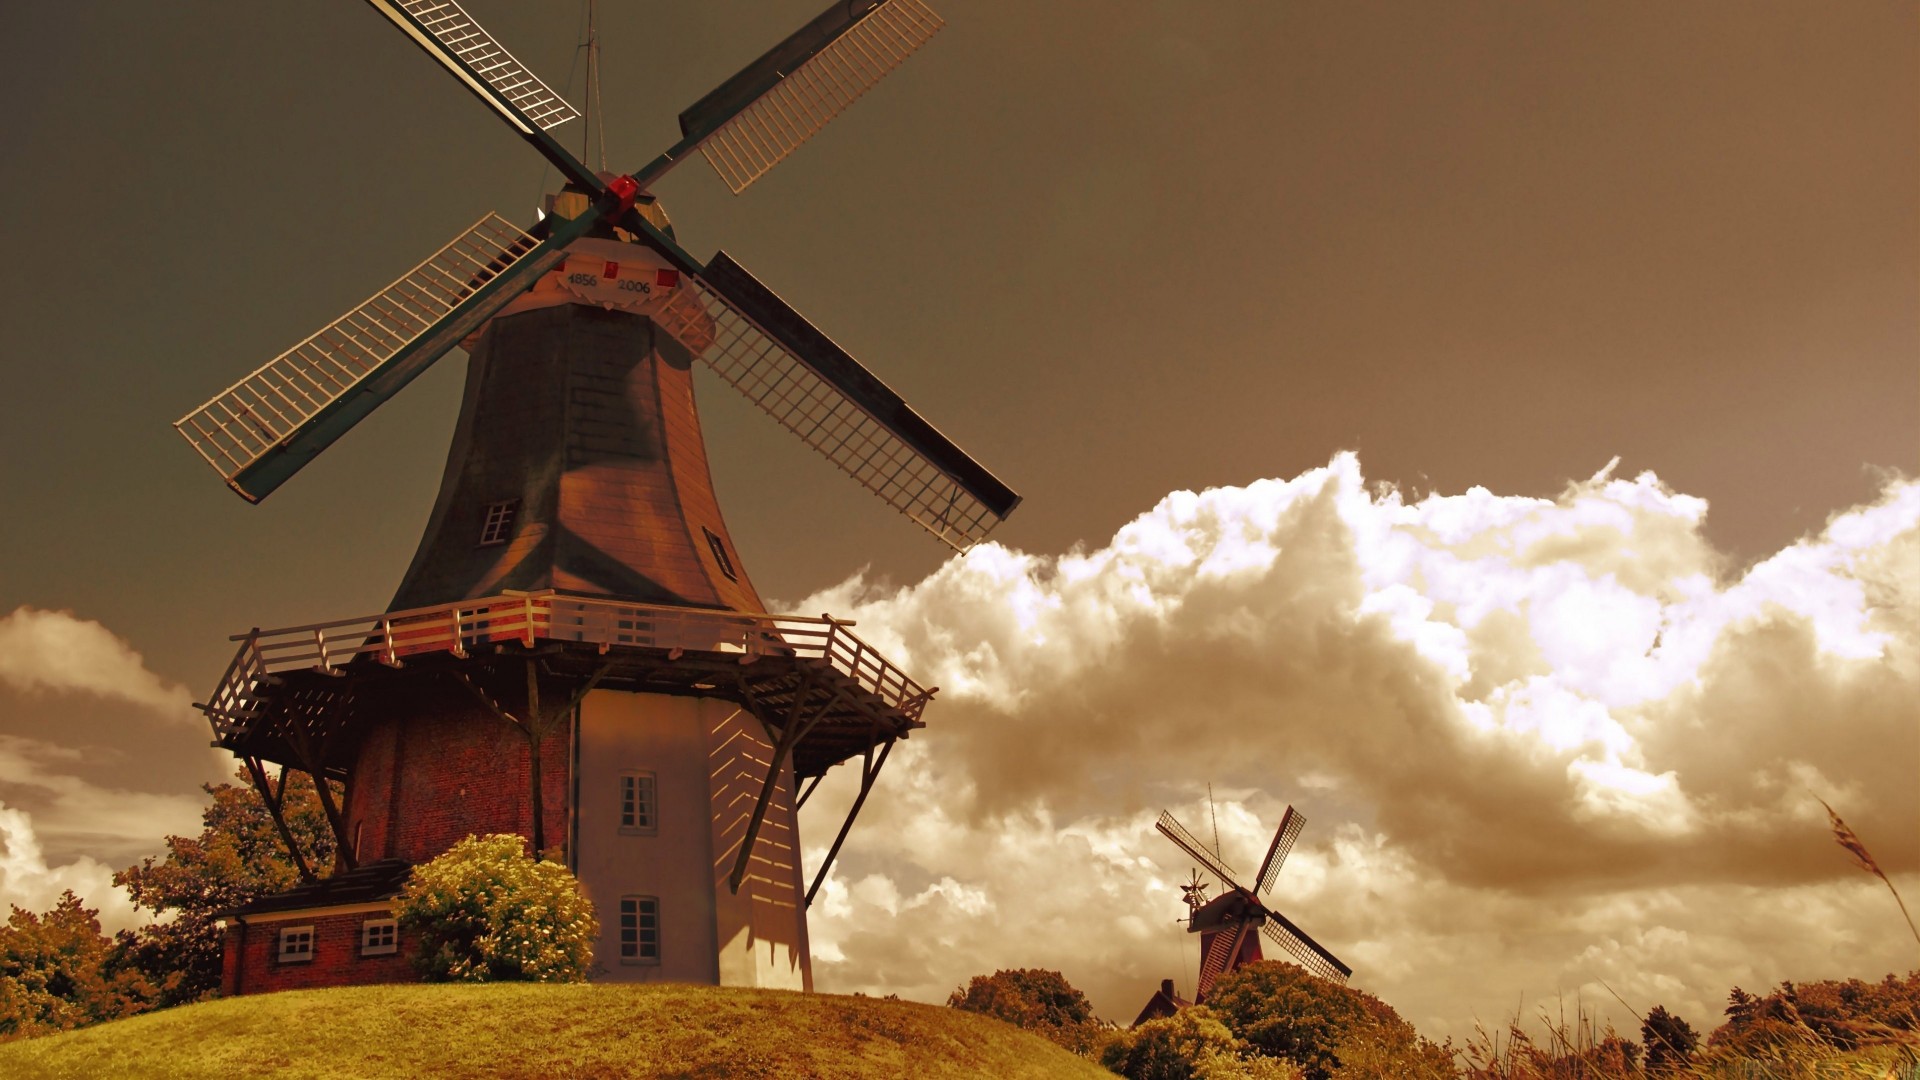 Holland, 4k, HD wallpaper, Mill, wind, field, sky, grass, nature, clouds, Netherlands (horizontal)